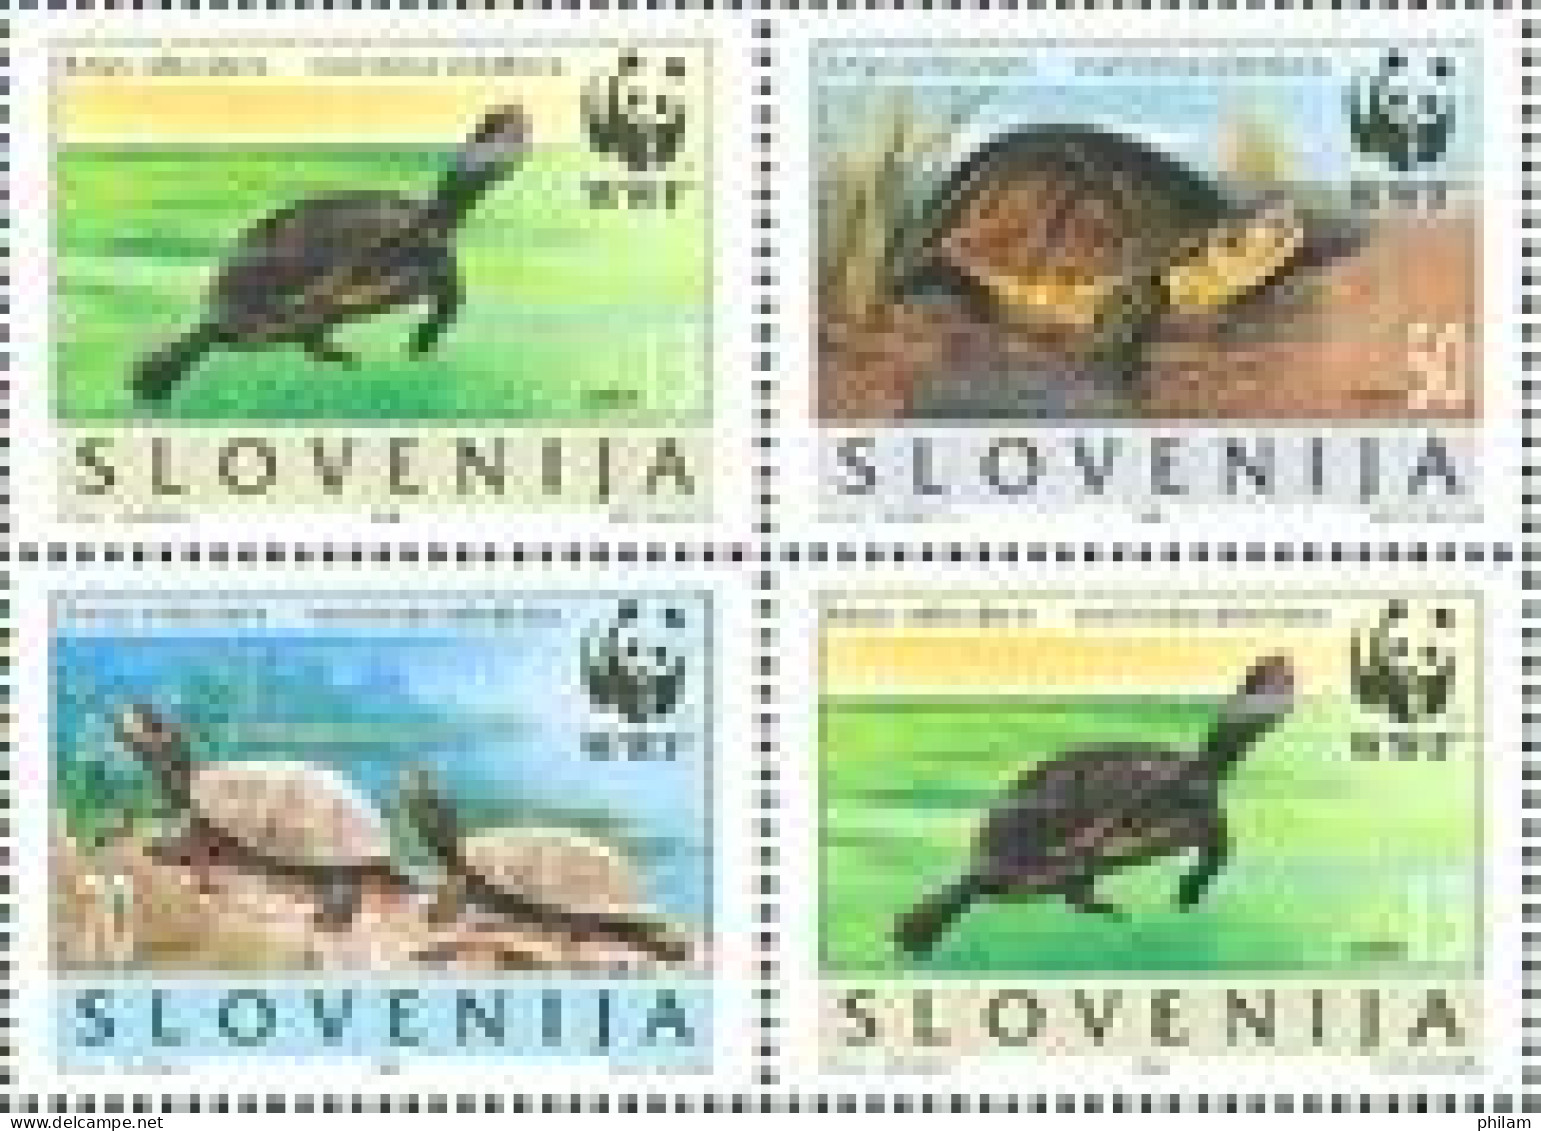 SLOVENIE 1996 - WWF - Tortues Emys Orbicularis - 4 V. - Slovénie